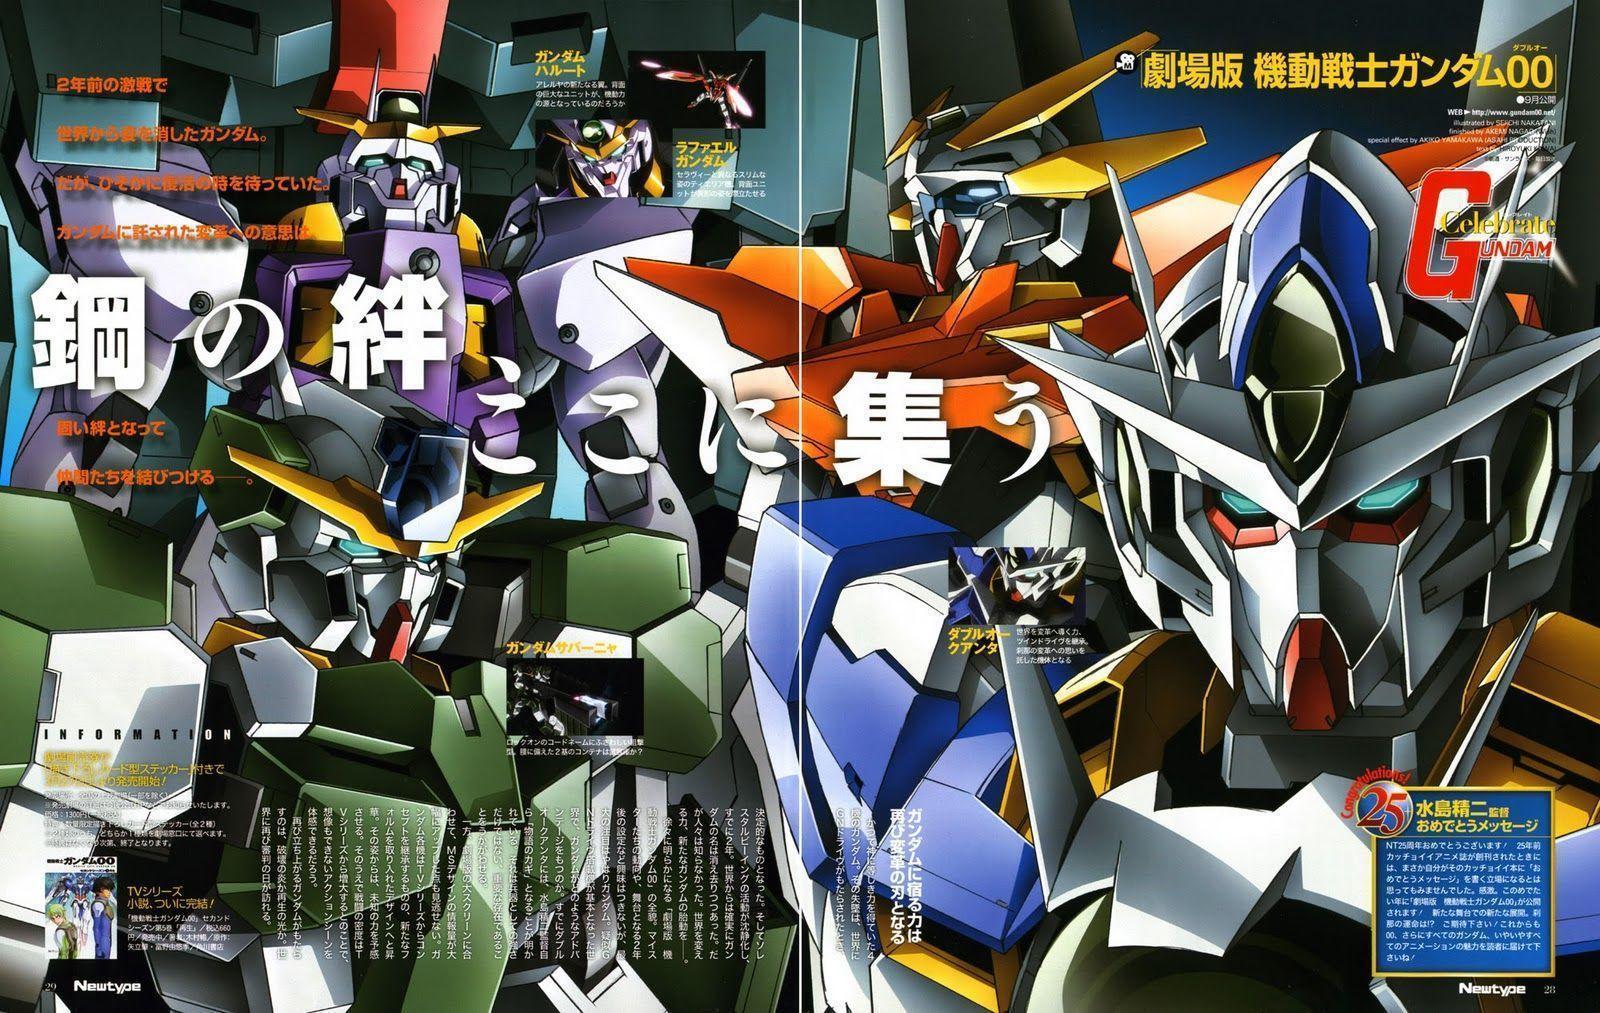 Wallpaper For > Gundam 00 S2 Wallpaper